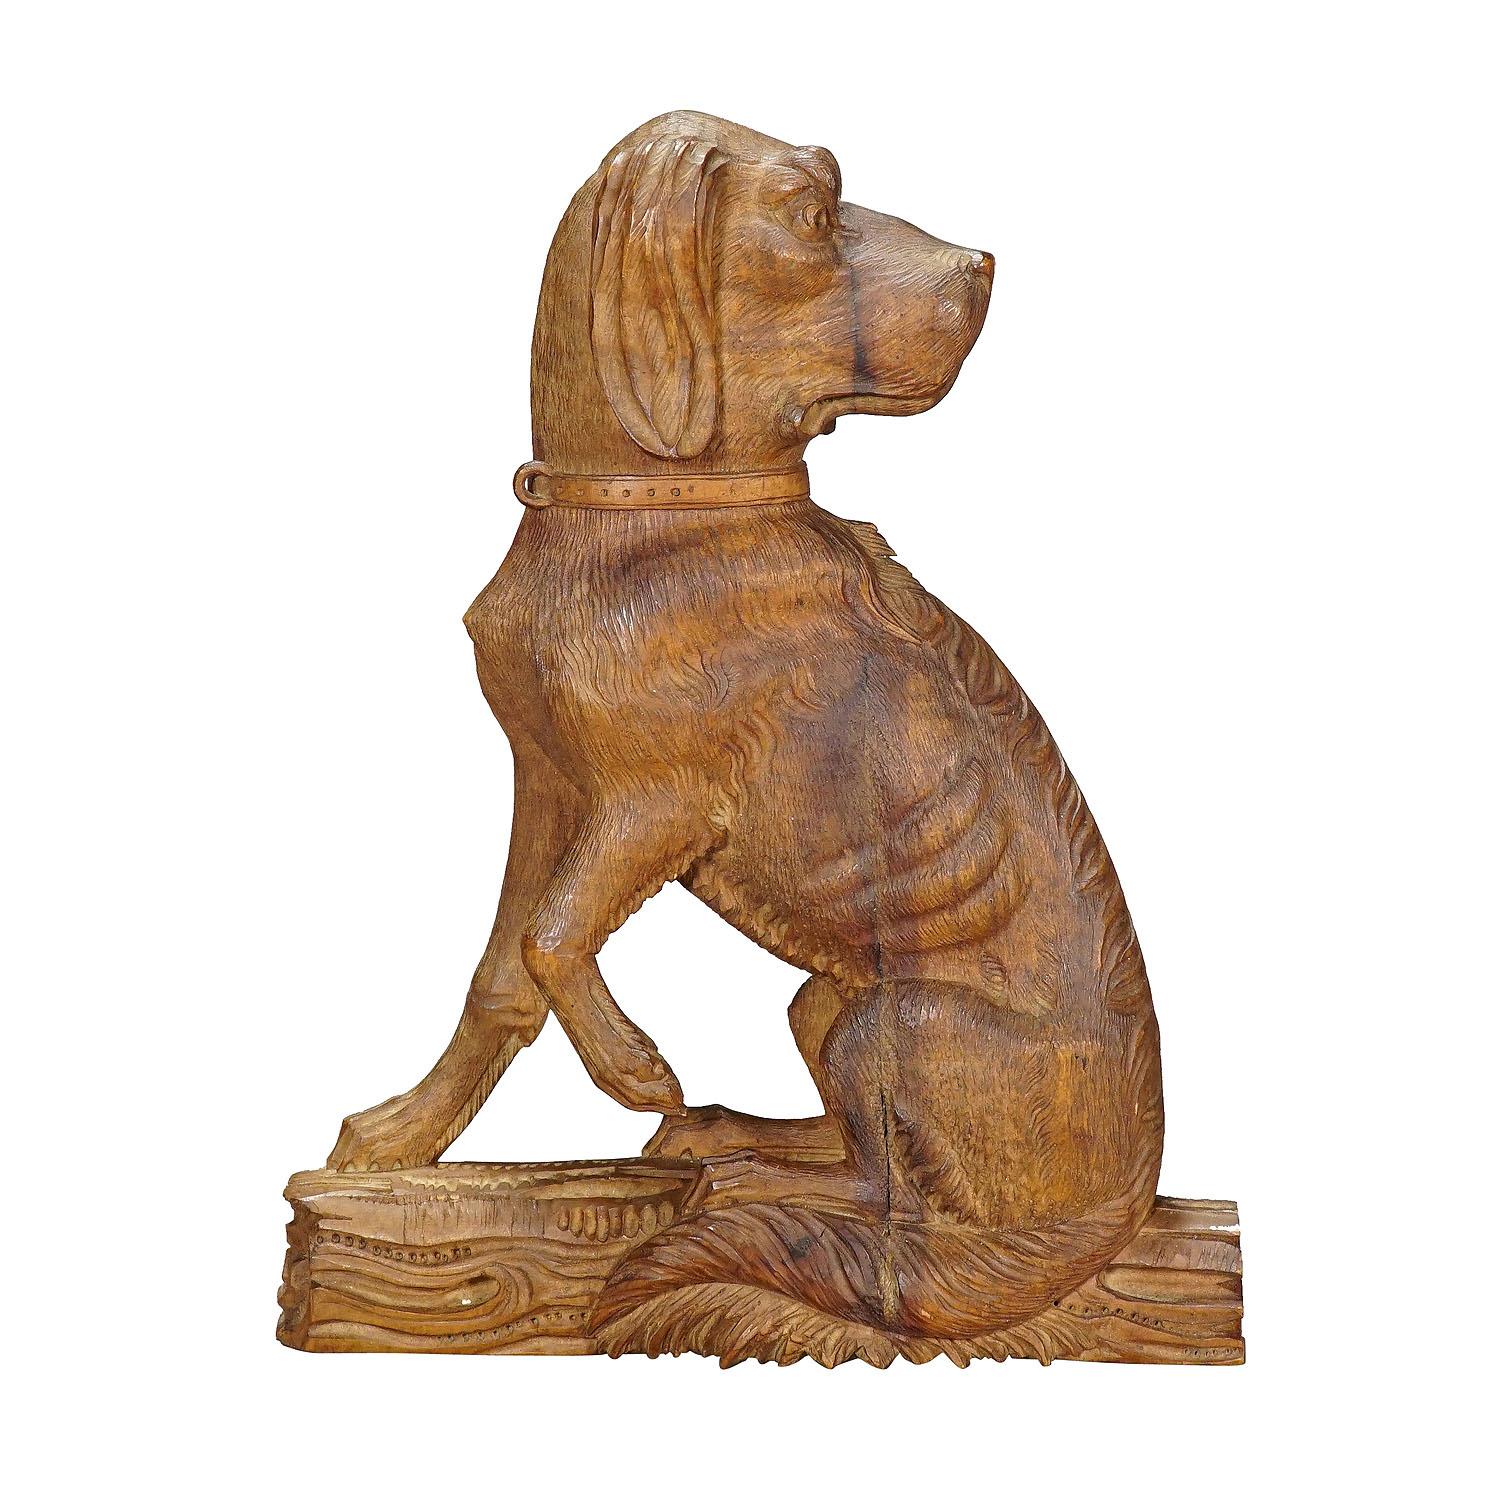 Statue finement sculptée d'un chien de chasse, vers 1920

Statue en bois sculptée d'un chien de chasse. Il est sculpté en demi-relief dans un morceau de bois de noyer. Fabriqué à Brienz, en Suisse, vers 1920.

La tradition de la sculpture sur bois à